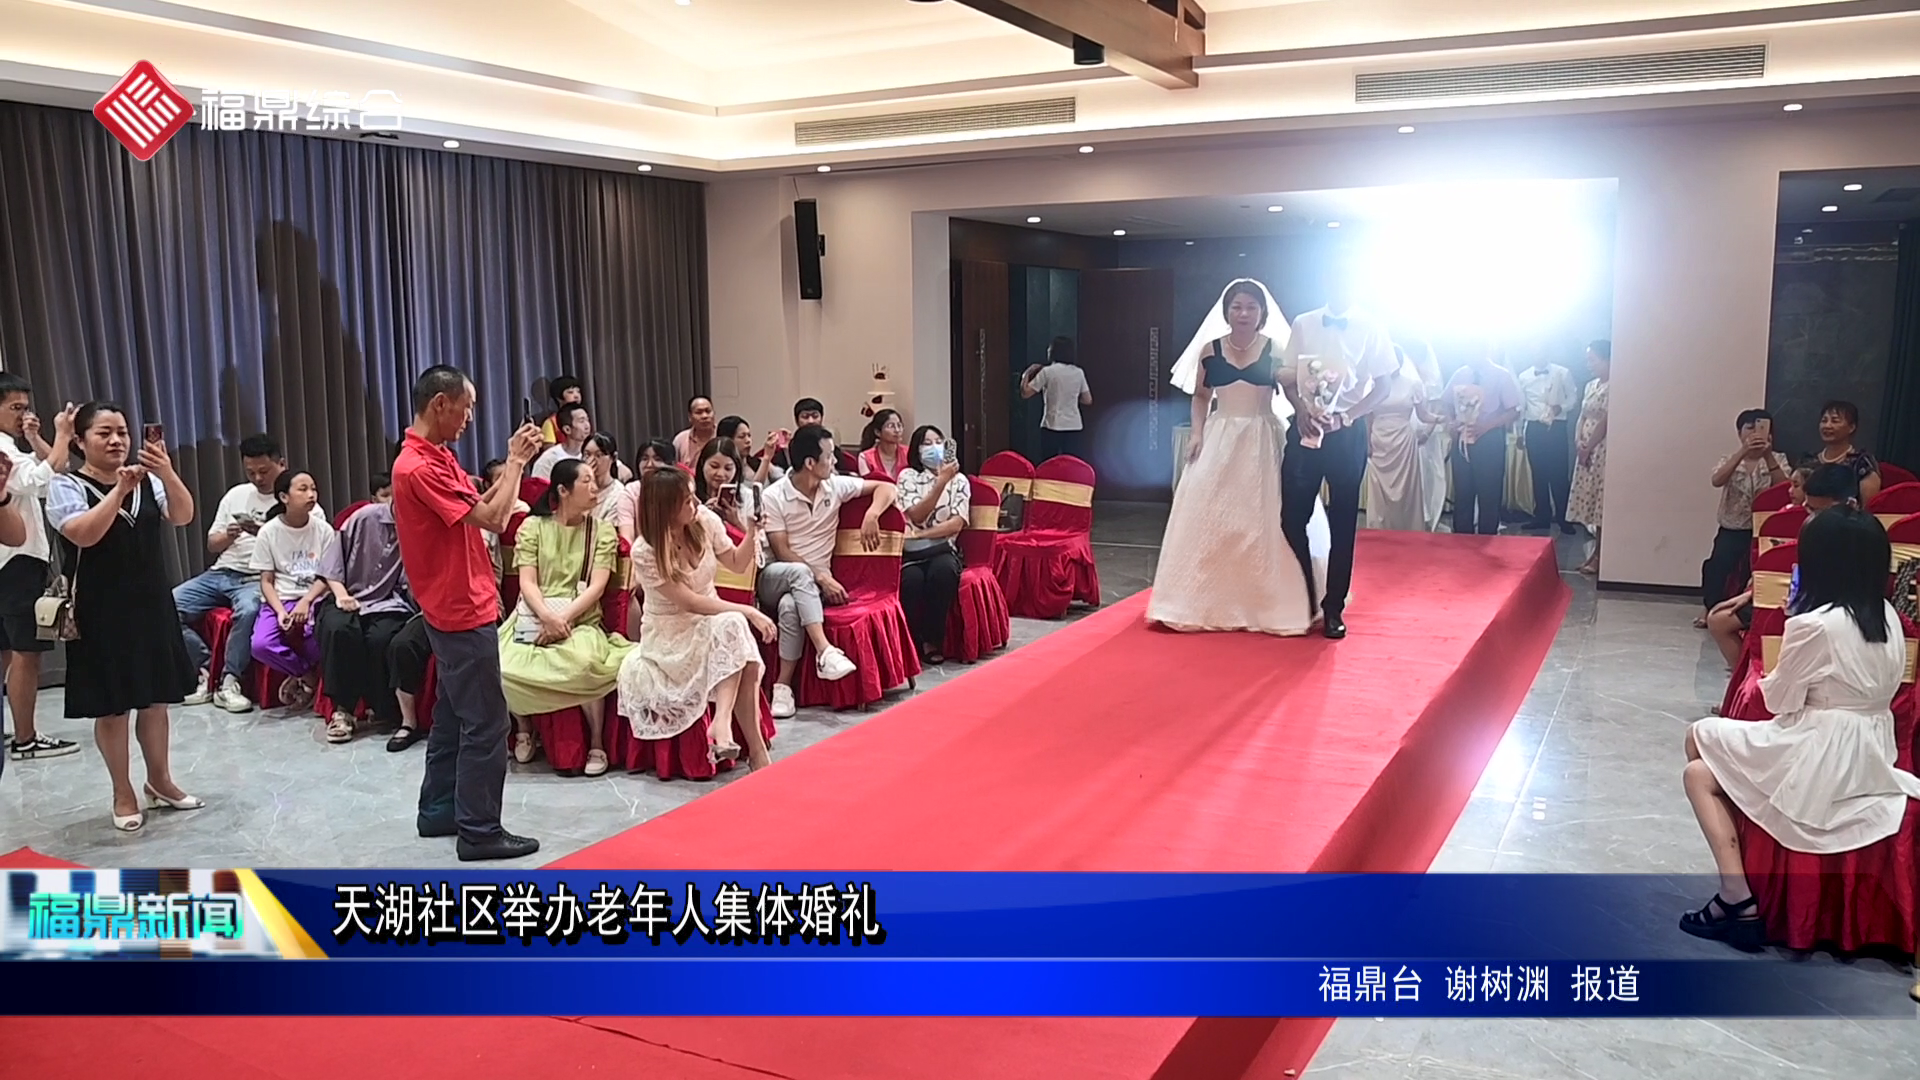  天湖社区举办老年人集体婚礼